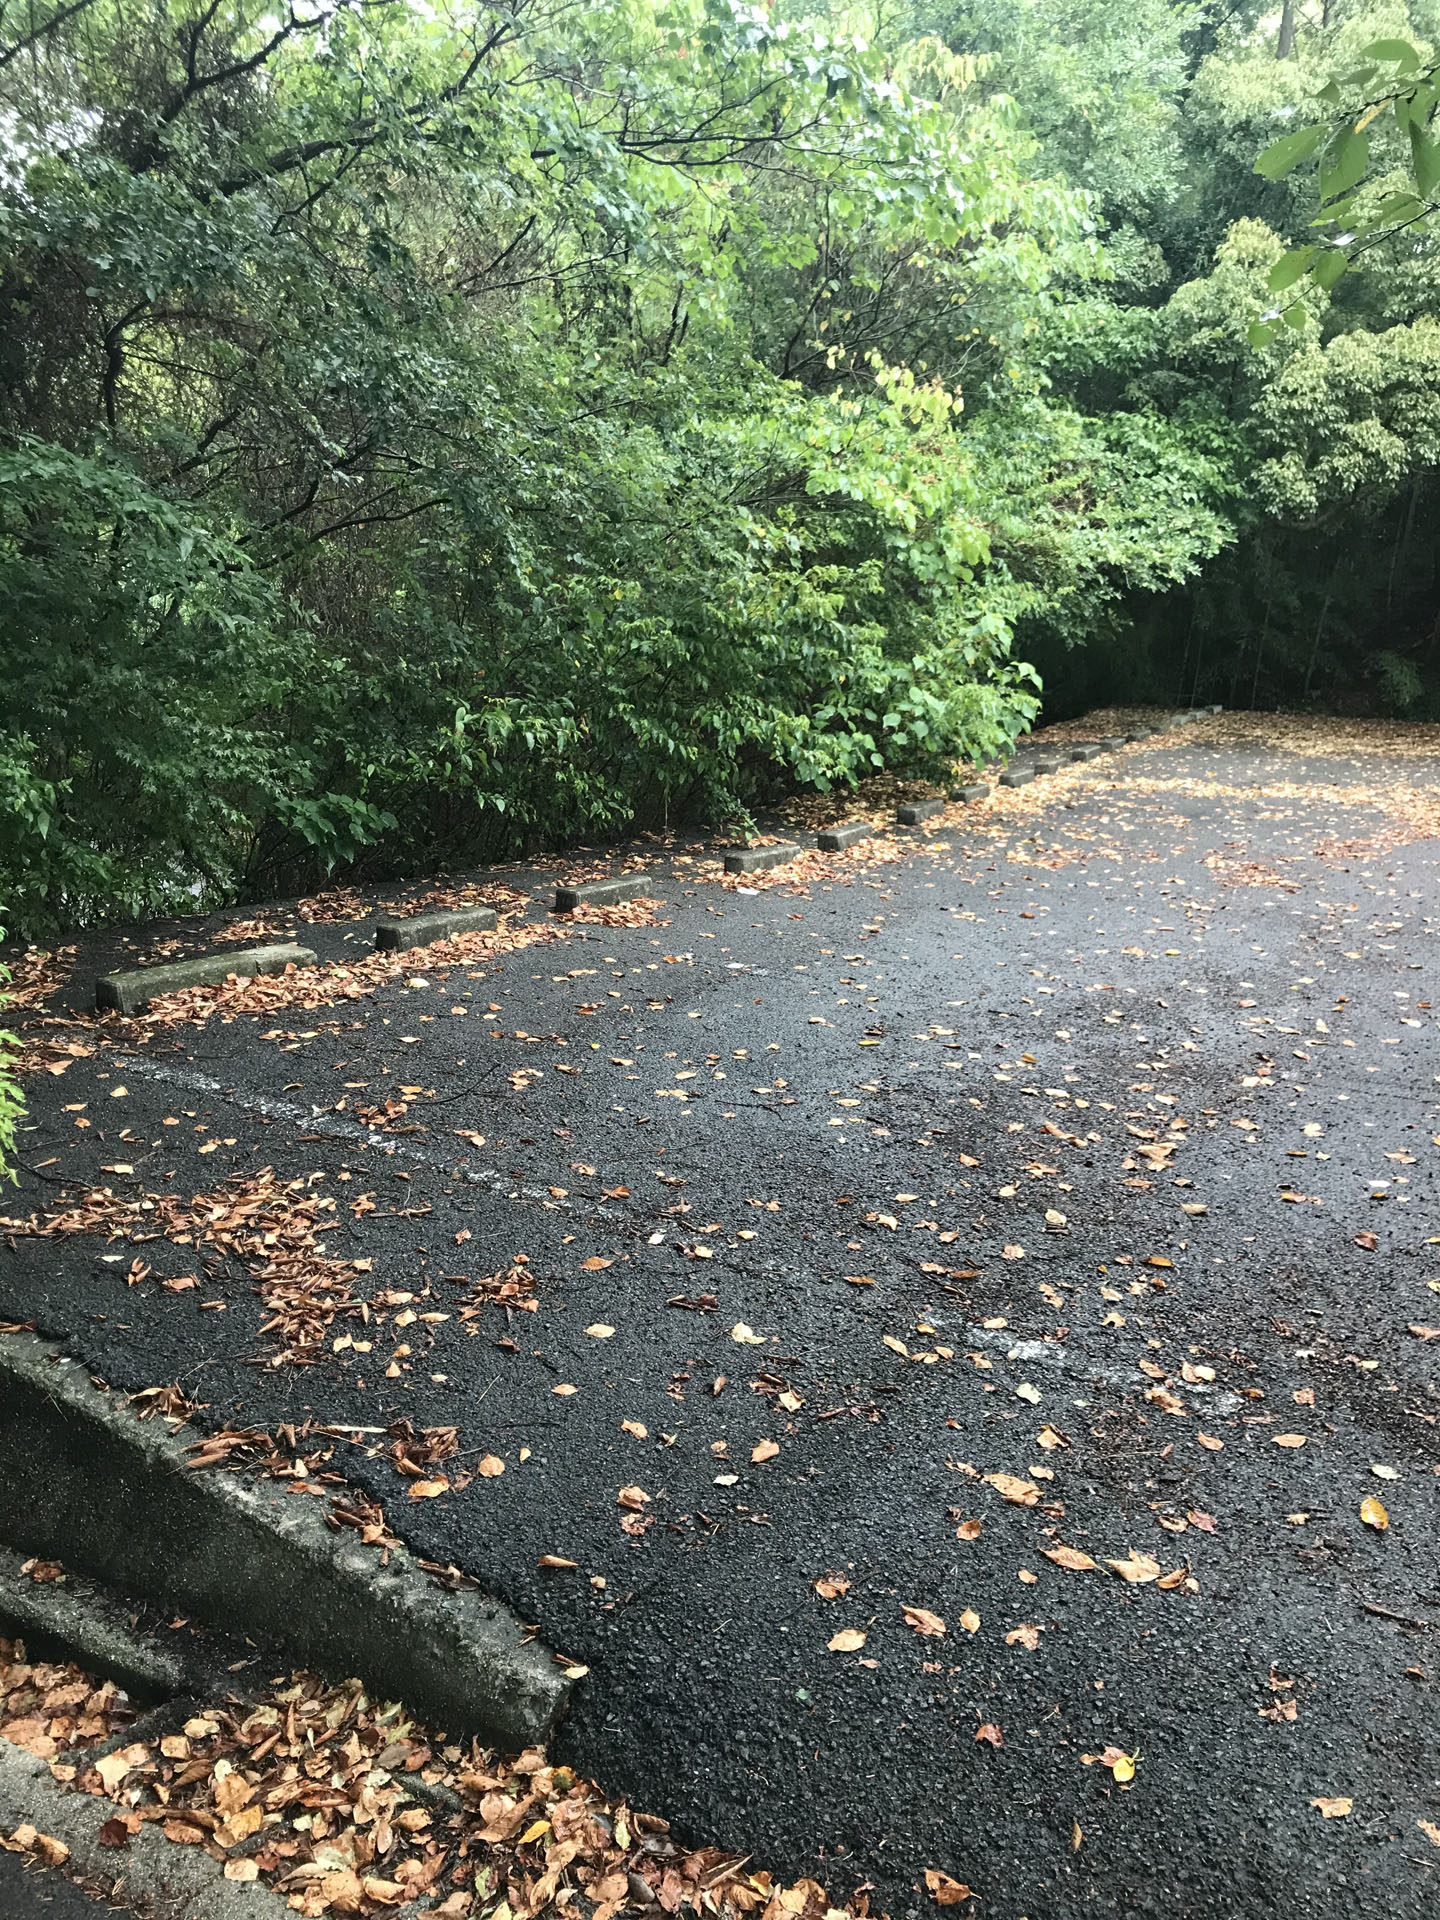 登山口入ってすぐにある、わくわくパーク駐車場。
ここが最短かもだけど、土日とか紅葉のシーズンはすぐいっぱいになりそう。